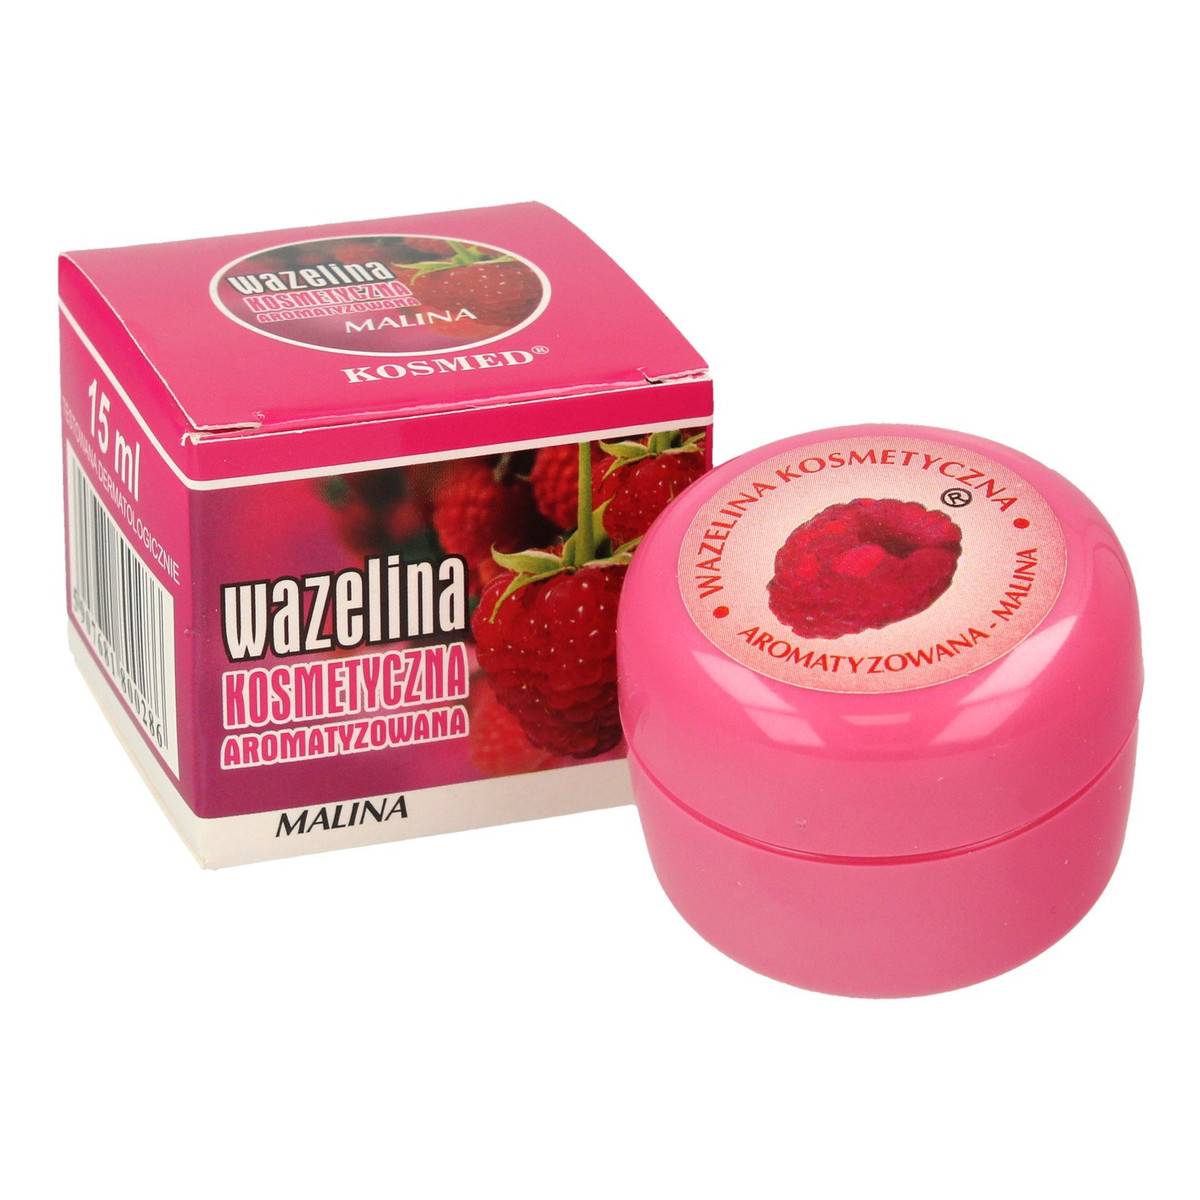 Kosmed Wazelina kosmetyczna aromatyzowana - Malina 15ml